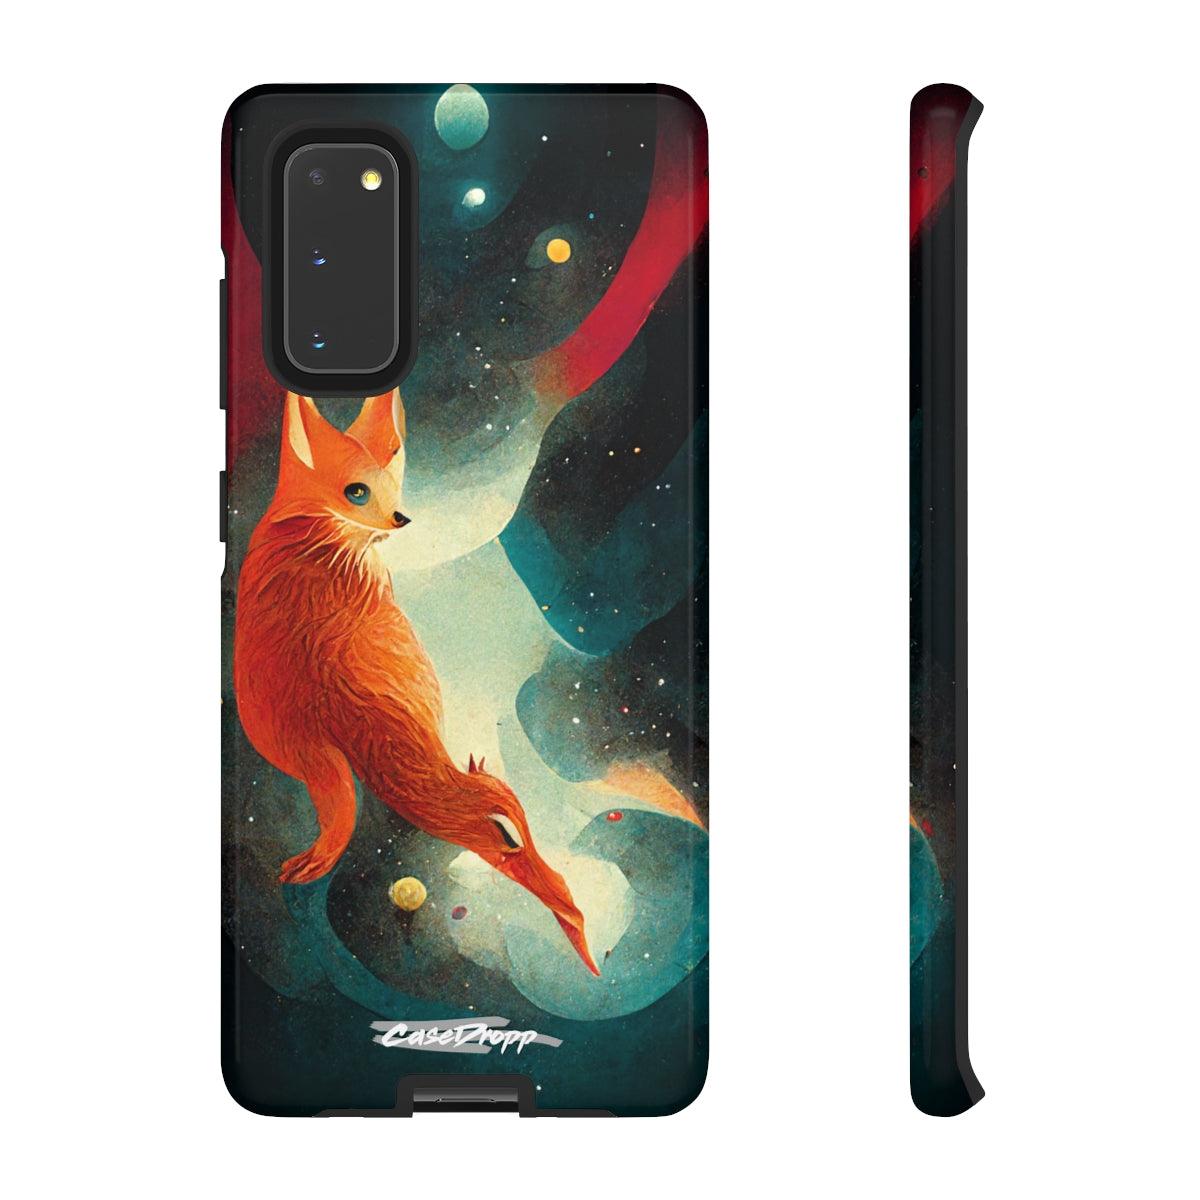 Celestial Fox - Tough iPhone / Samsung Case CaseDropp